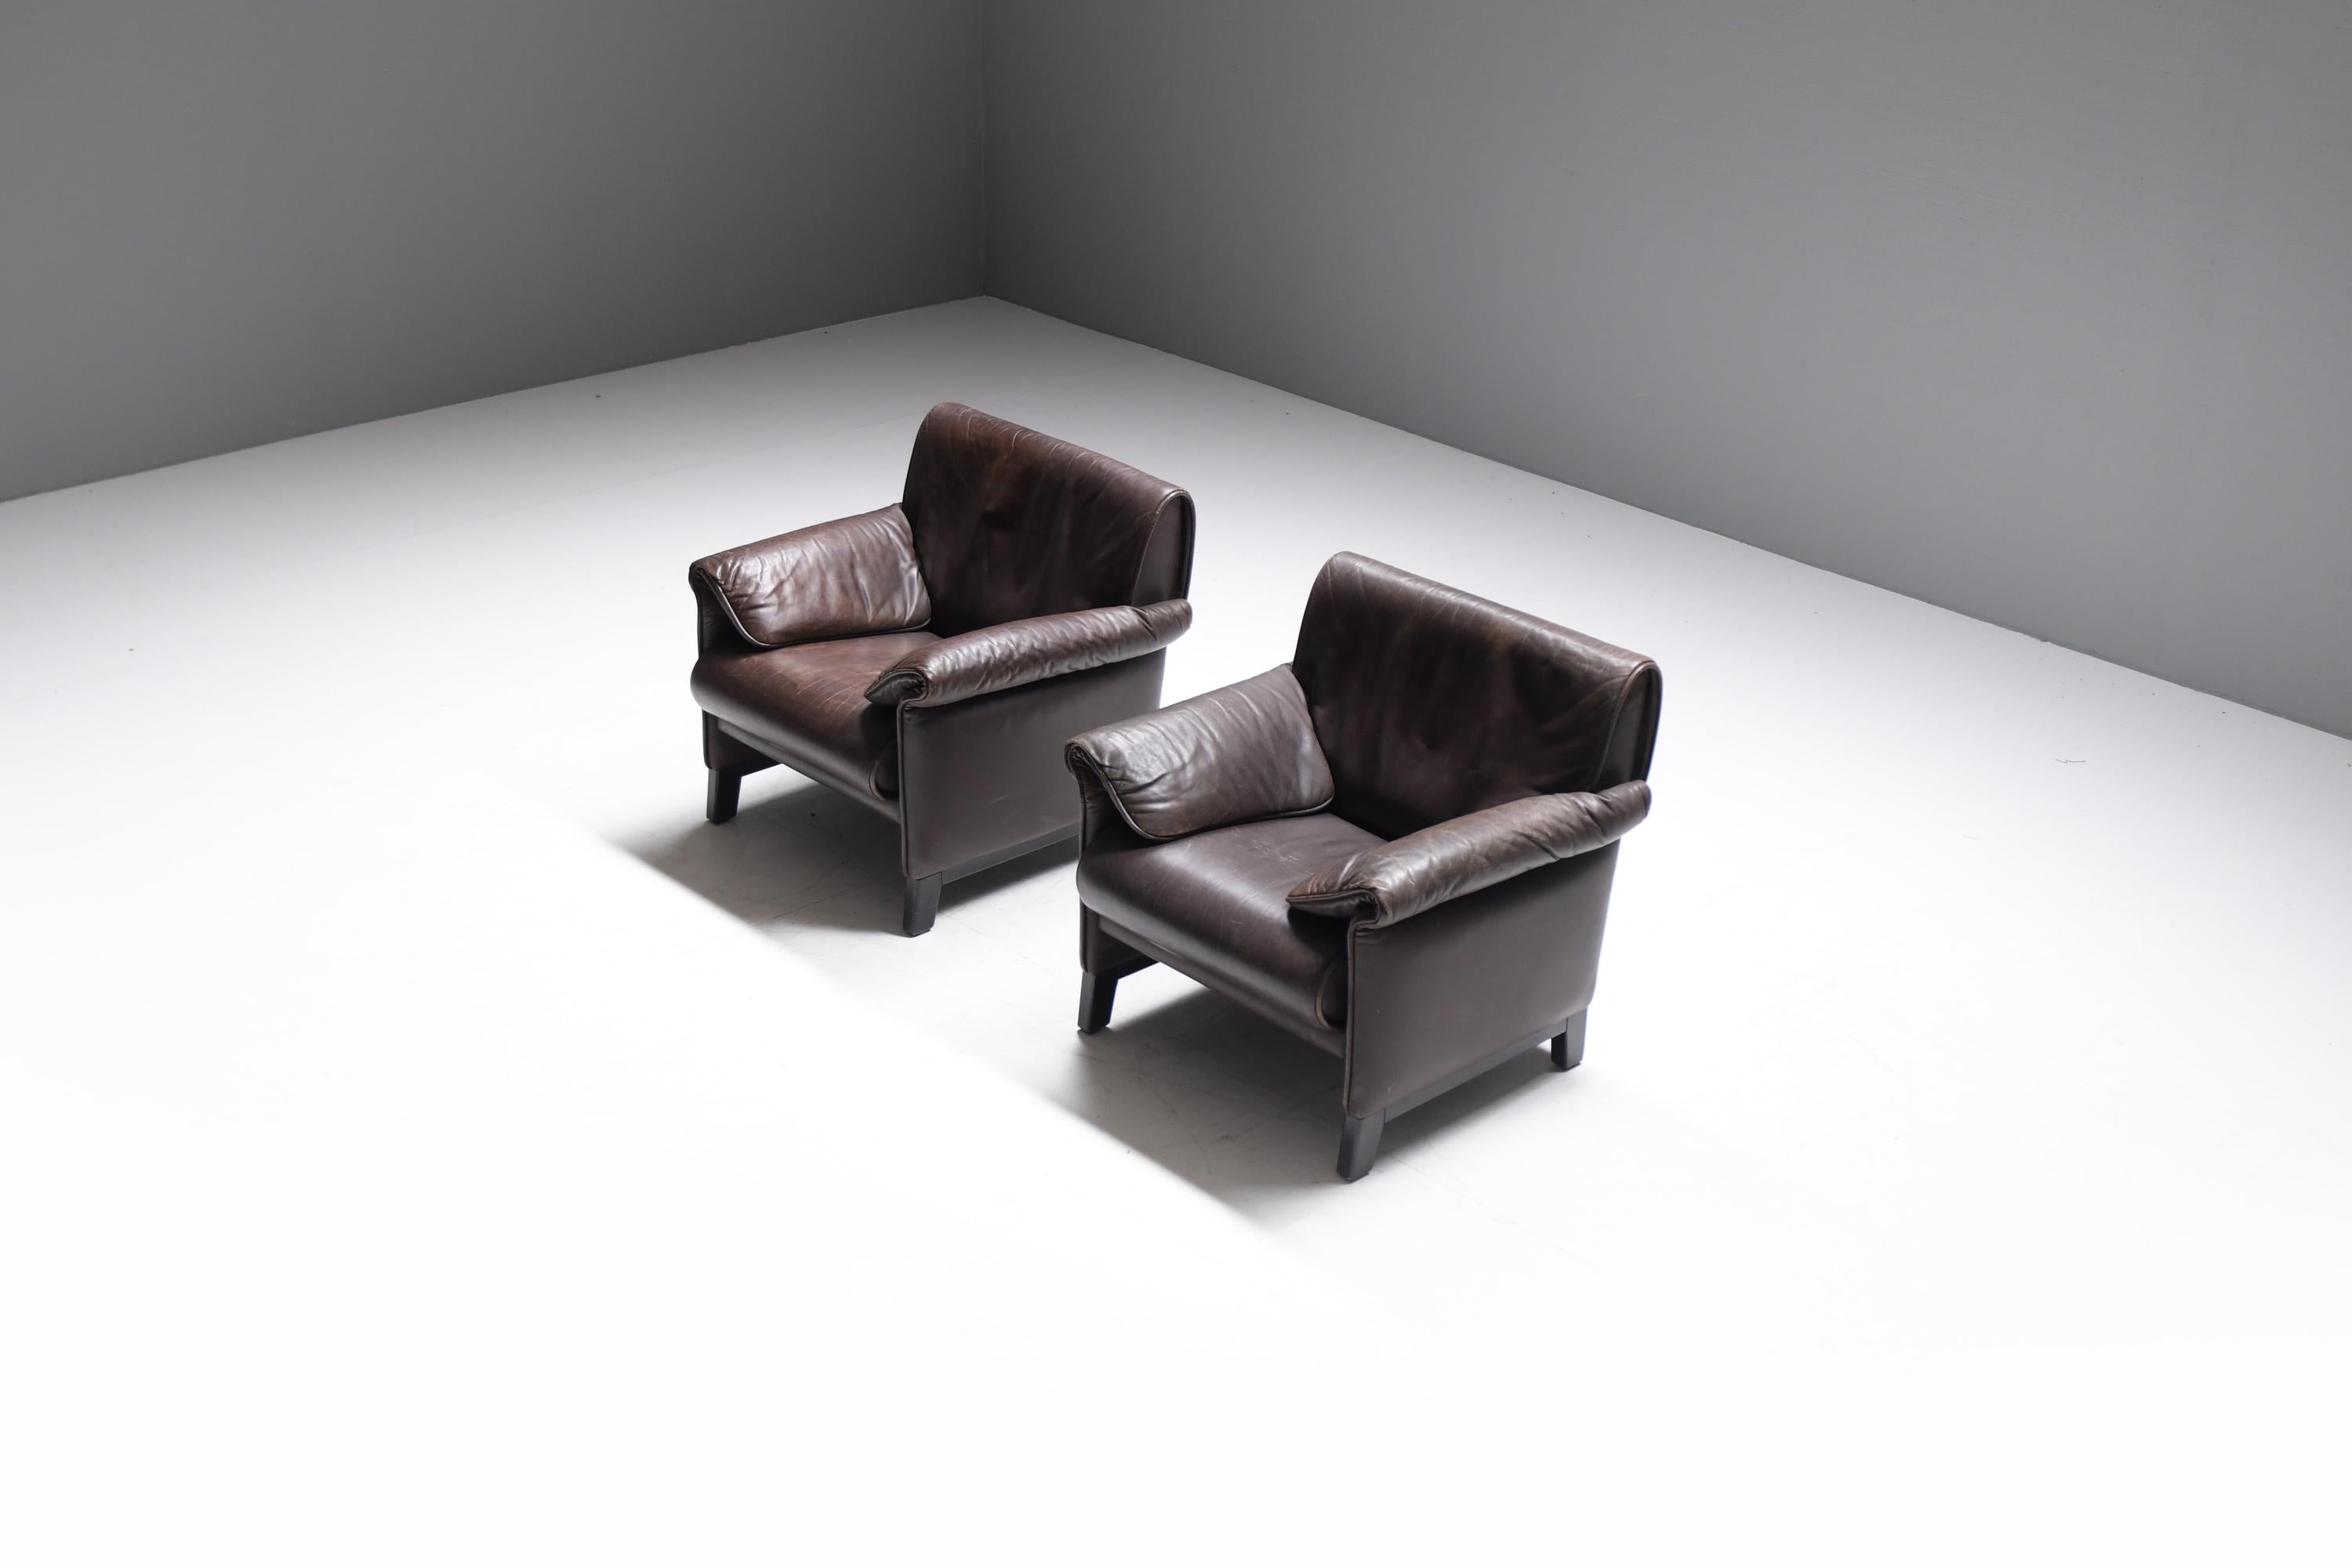 Elegante paire de fauteuils De Sede 'DS-14' en cuir patiné brun foncé et base en bois laqué noir.
Conçu en 1989 par l'équipe De Sede et fabriqué entre 1989 et 1997. 

Forte d'une histoire fascinante de soixante ans, la marque suisse de Sede